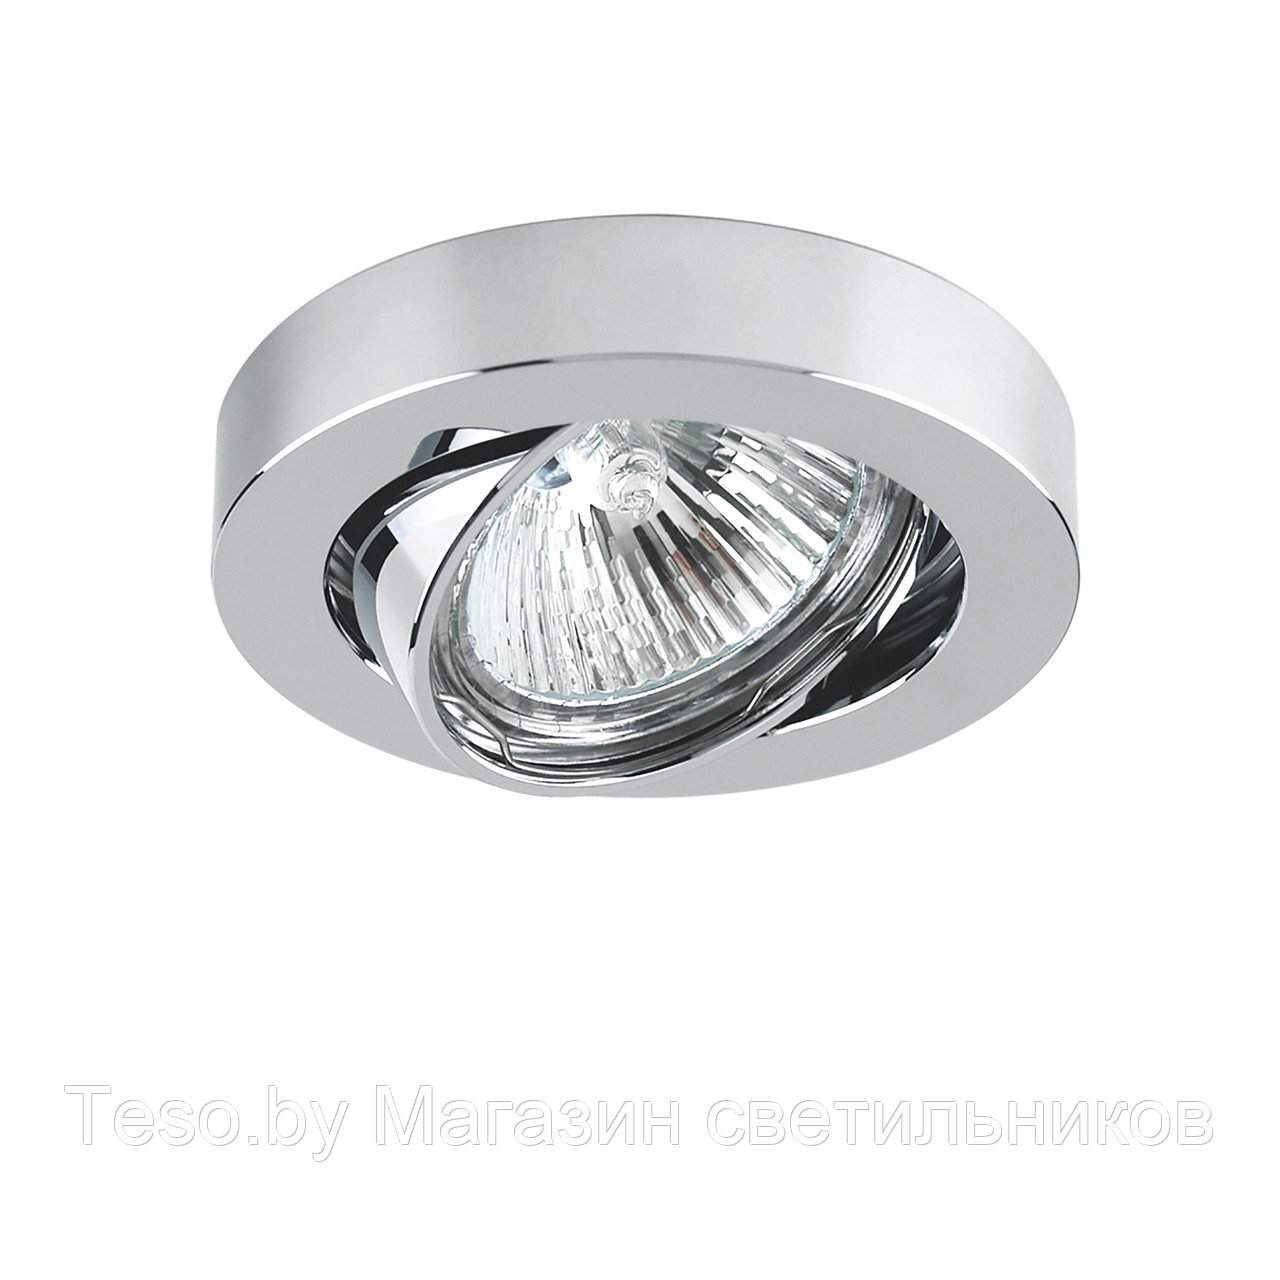 Светильник точечный встраиваемый декоративный под заменяемые галогенные или LED лампы Lightstar Mattoni 006234